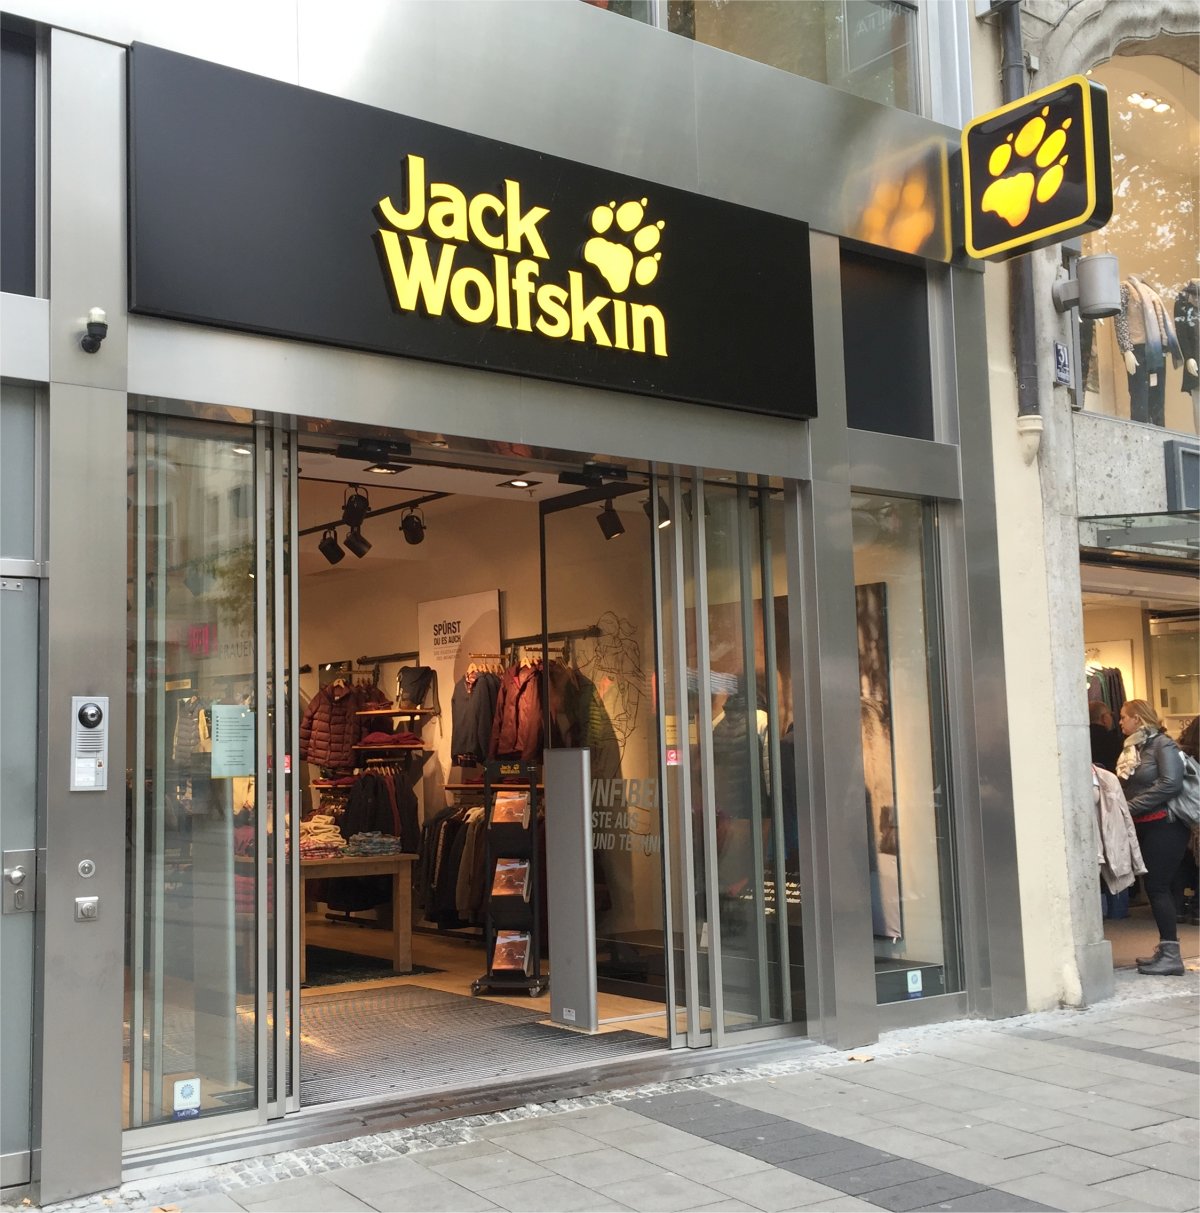 Bild 1 Jack Wolfskin Store in München